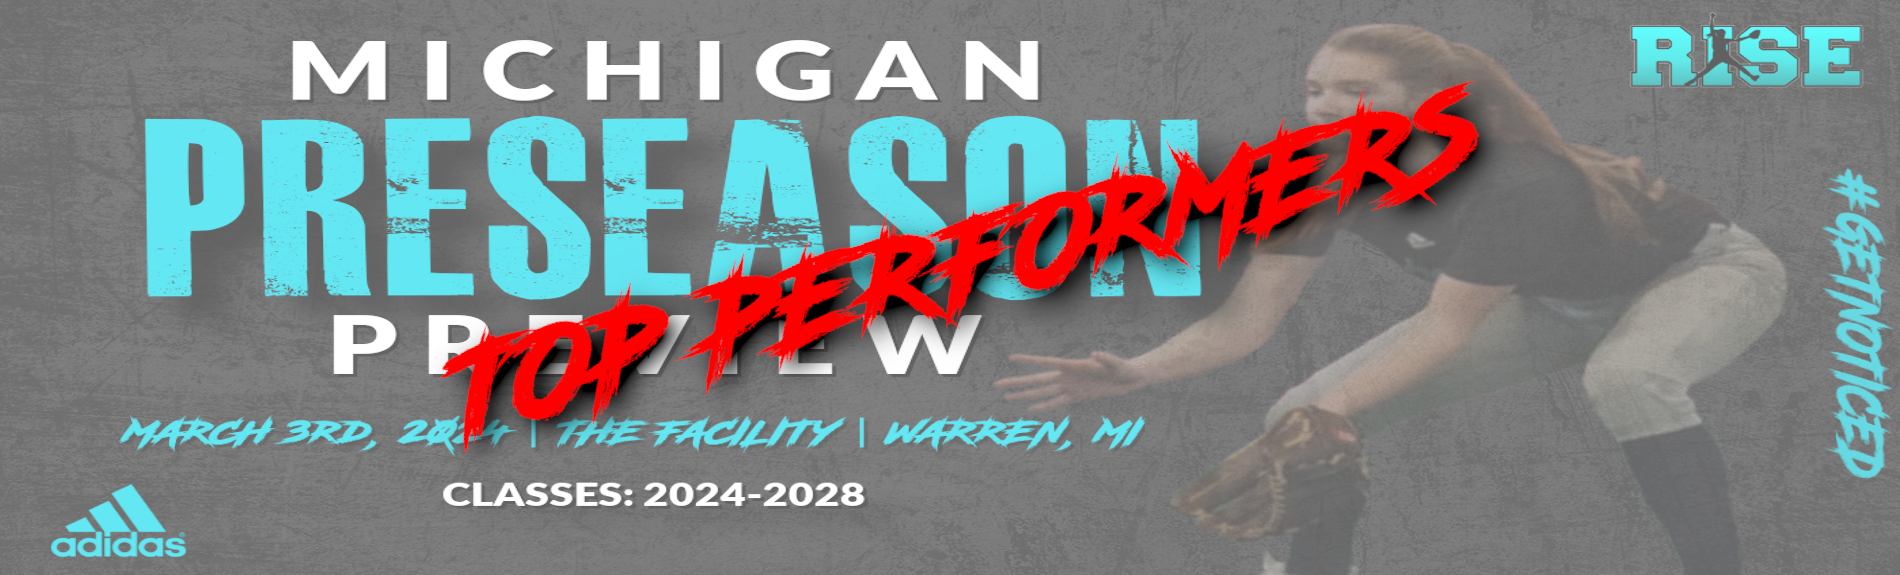 Michigan Preseason Preview “TOP PERFORMERS”